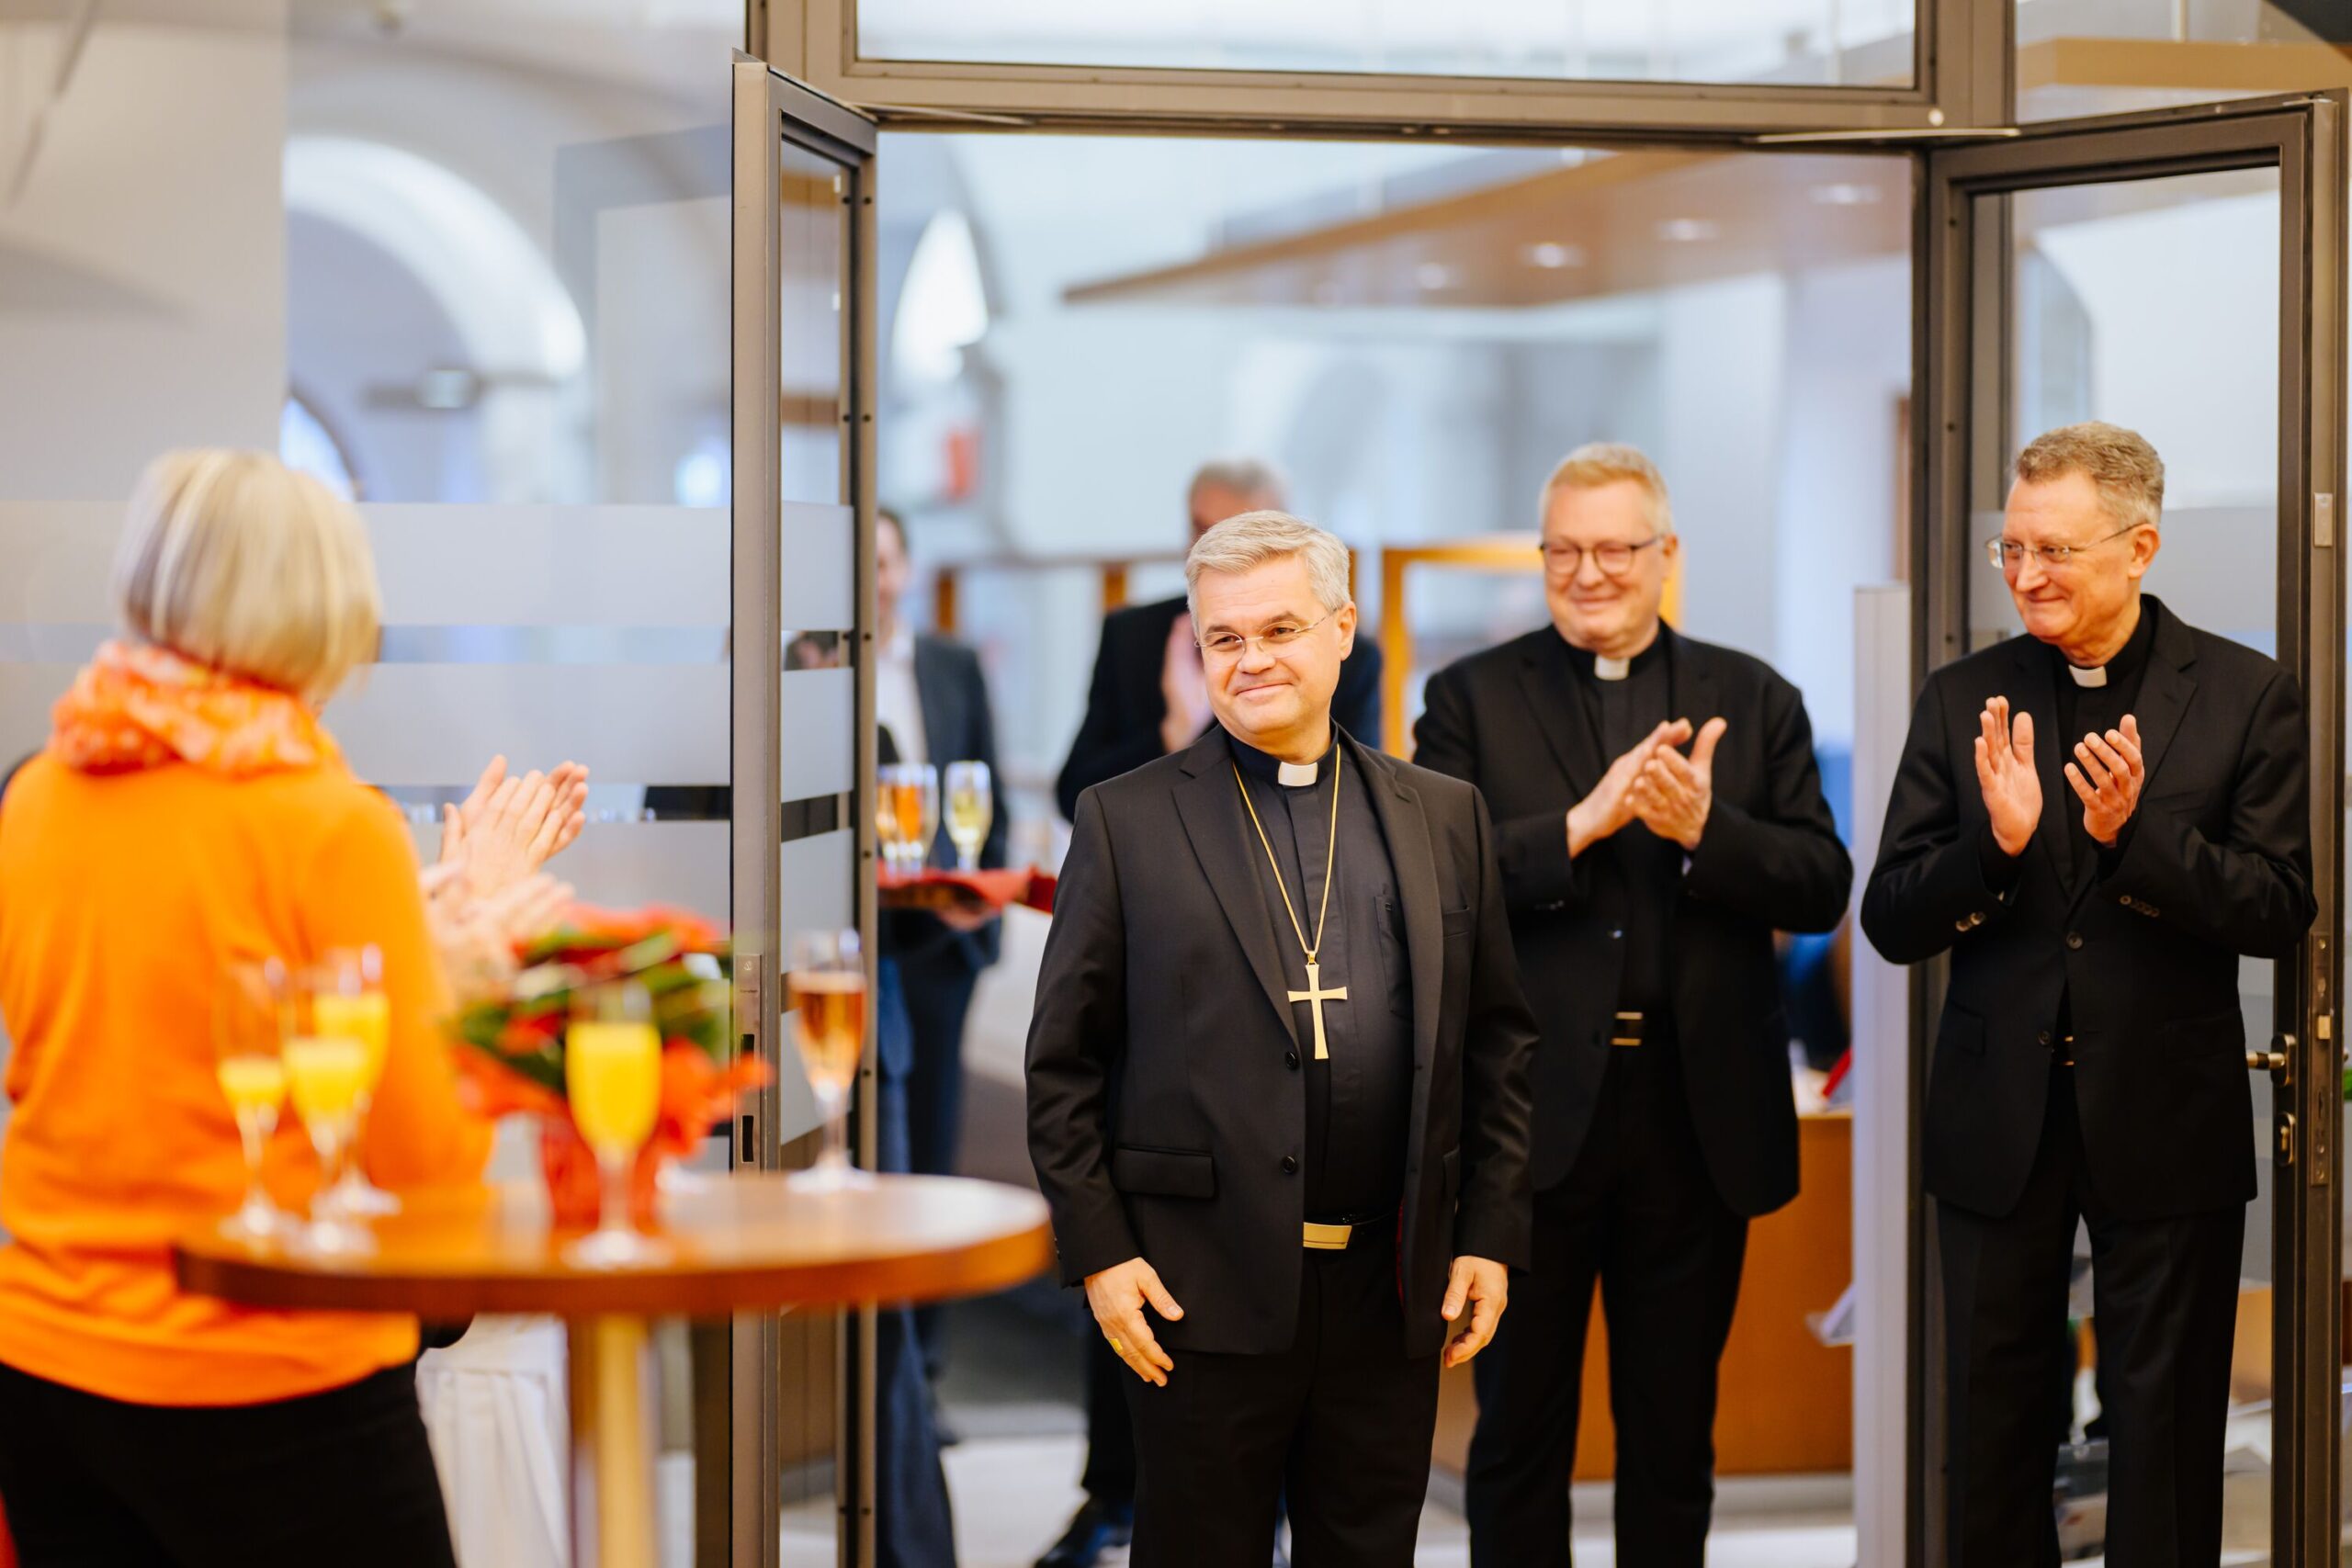 Der neue Erzbischof, Dr. Udo Markus Bentz wird begrüßt vom Domkapitel und den Laienvertretern, die das Domkapitel unterstützt haben, einen geeigneten Kandidaten zu finden.